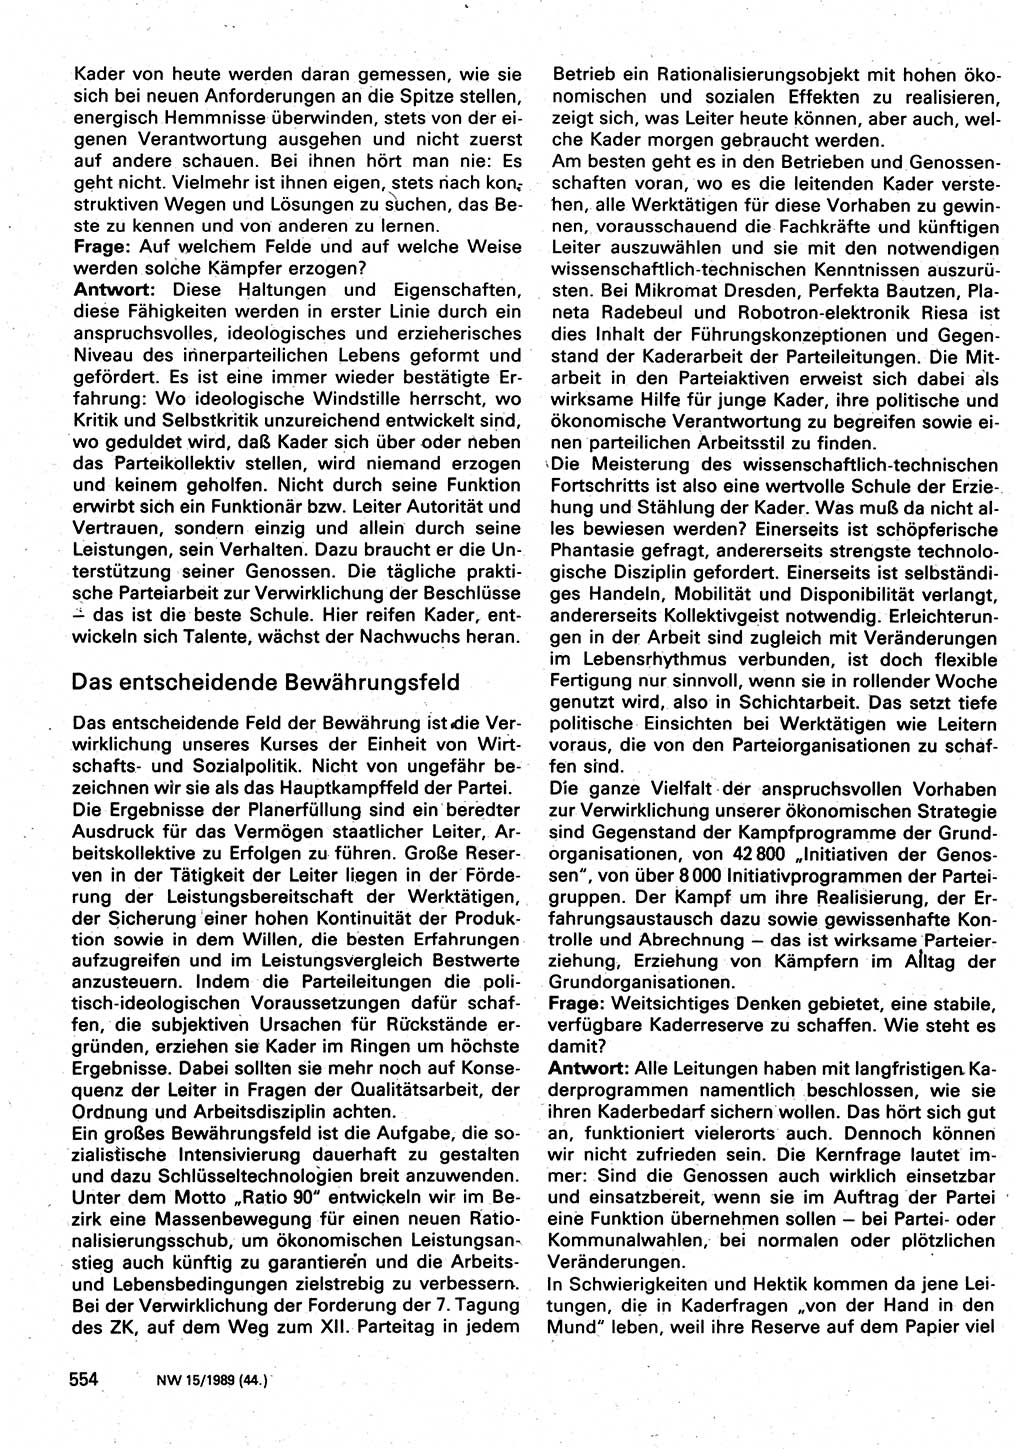 Neuer Weg (NW), Organ des Zentralkomitees (ZK) der SED (Sozialistische Einheitspartei Deutschlands) für Fragen des Parteilebens, 44. Jahrgang [Deutsche Demokratische Republik (DDR)] 1989, Seite 554 (NW ZK SED DDR 1989, S. 554)